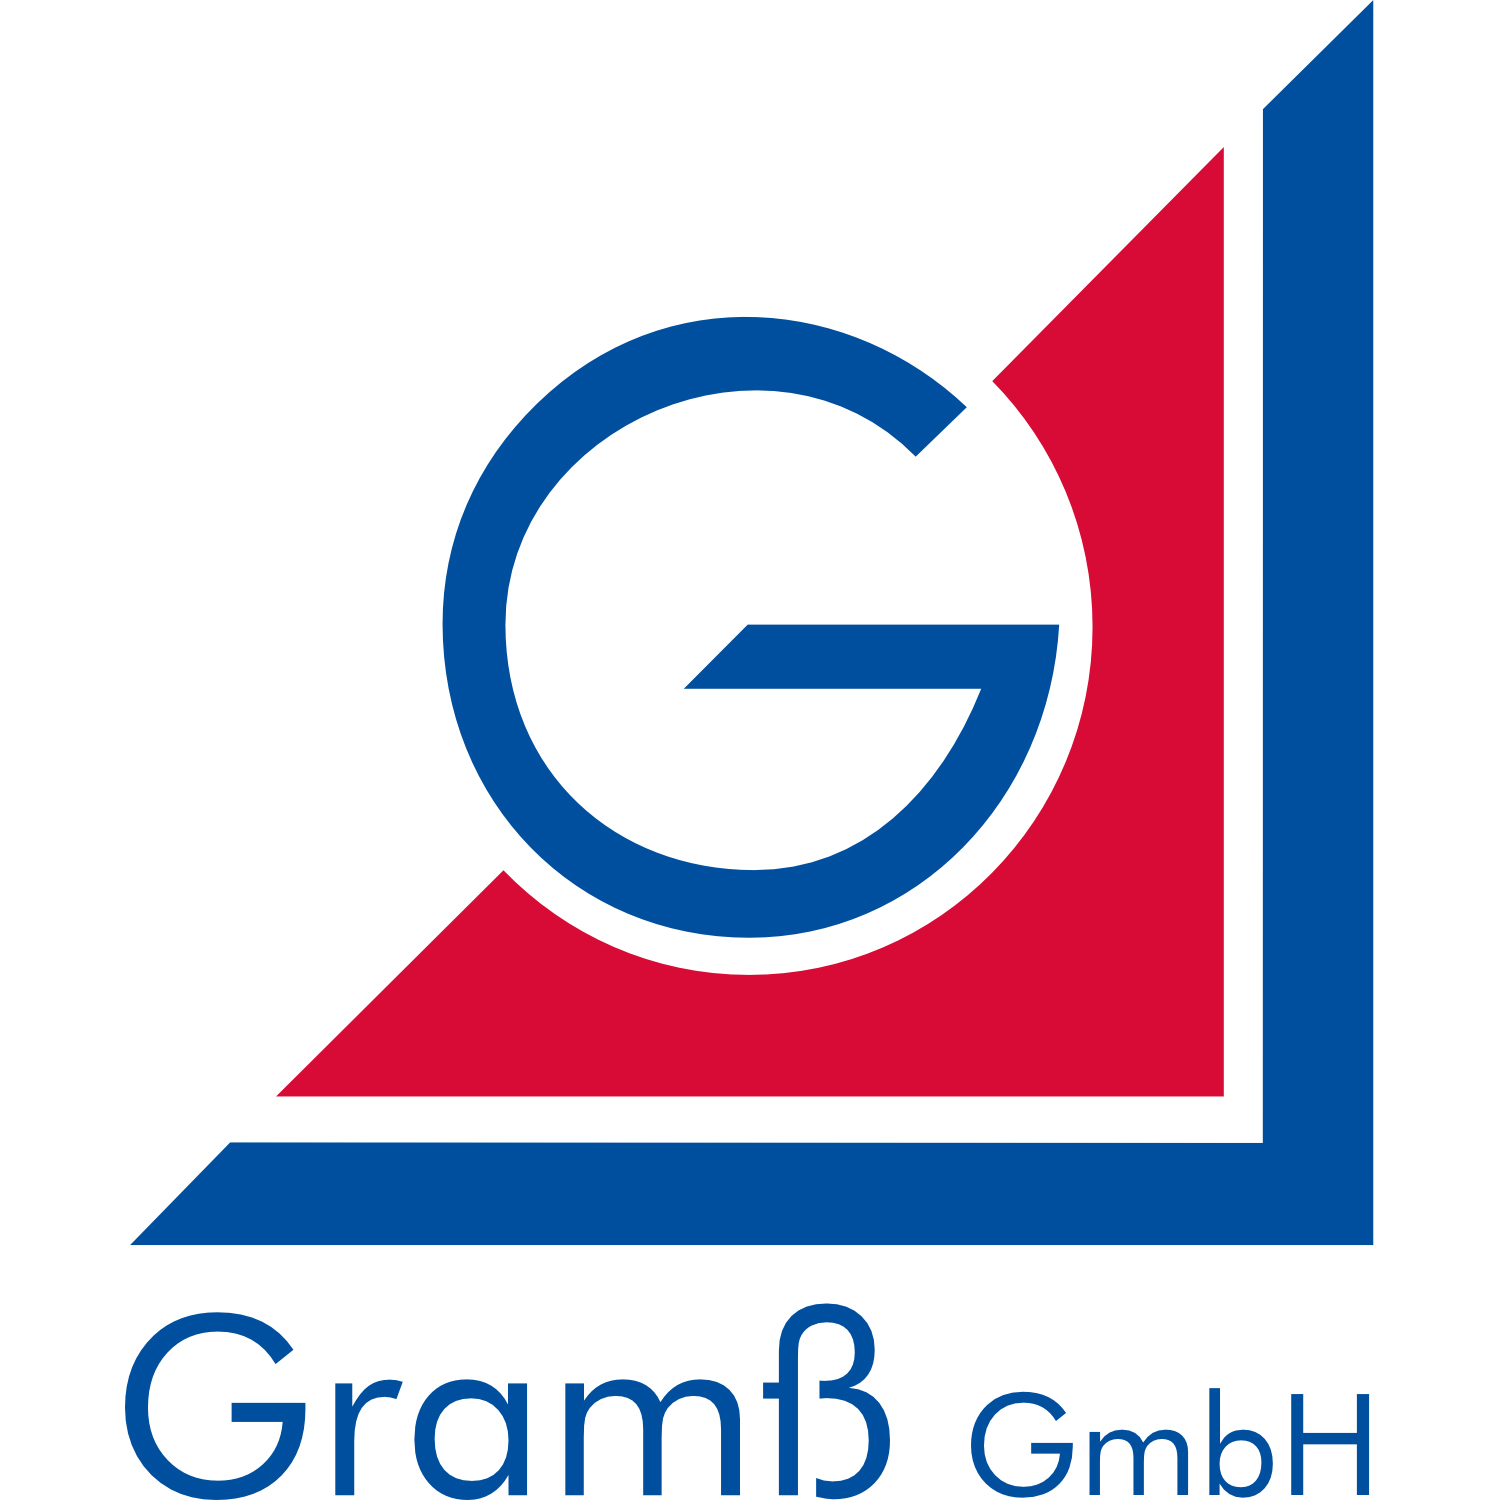 Gramß GmbH
Kunststoffverarbeitung